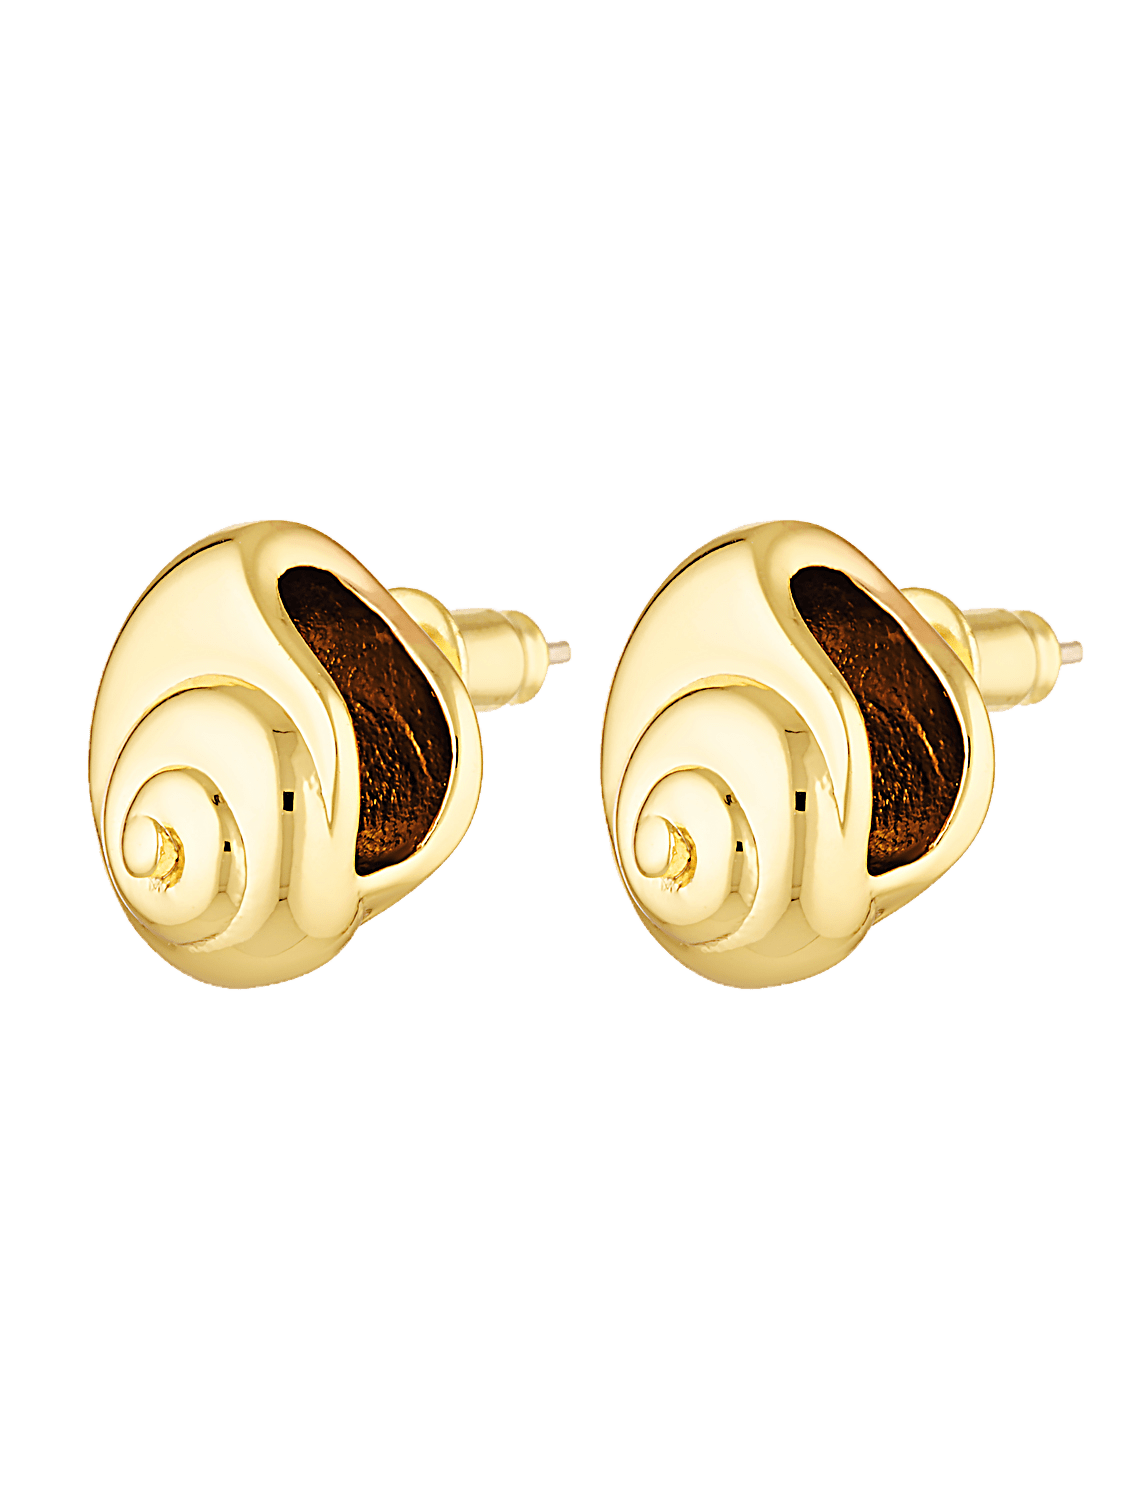 Seashell shaped earrings